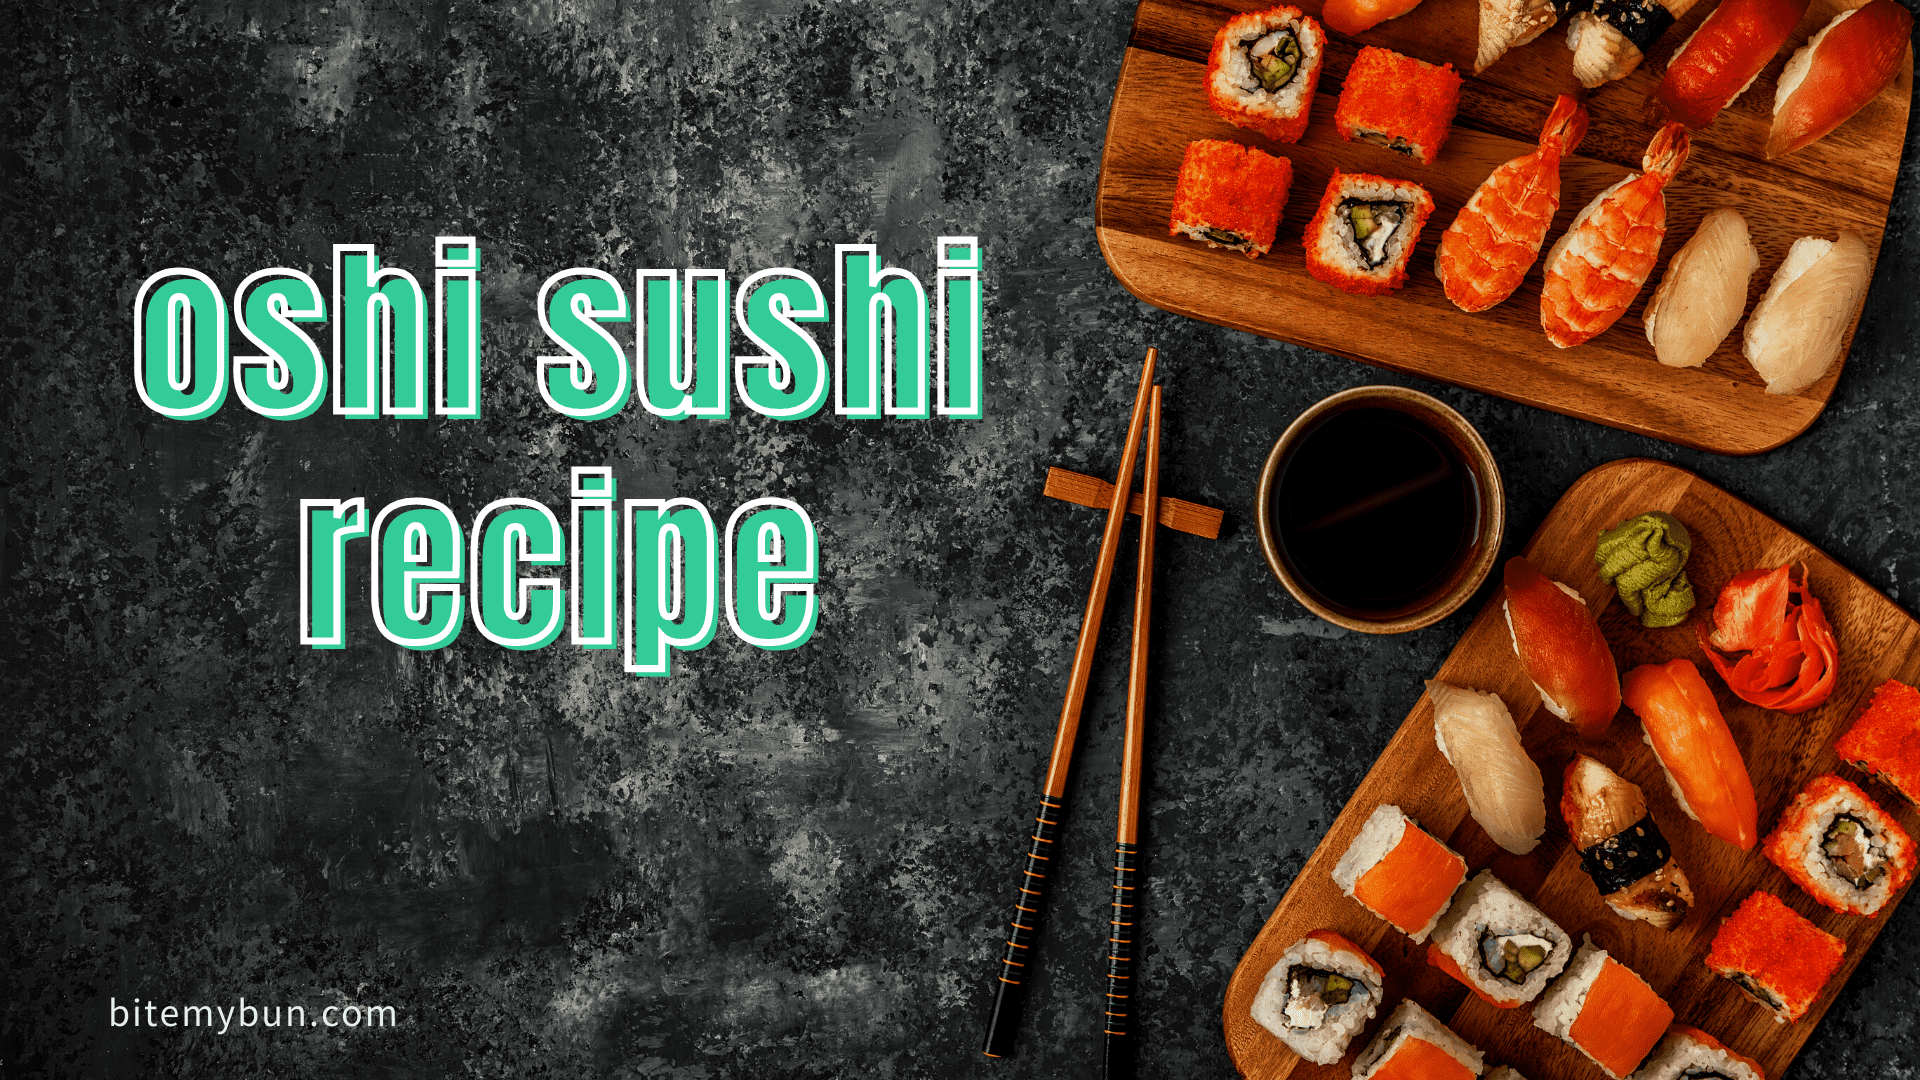 Oshi sushi recept | Den berömda boxsushin förklarade + hur man gör den själv